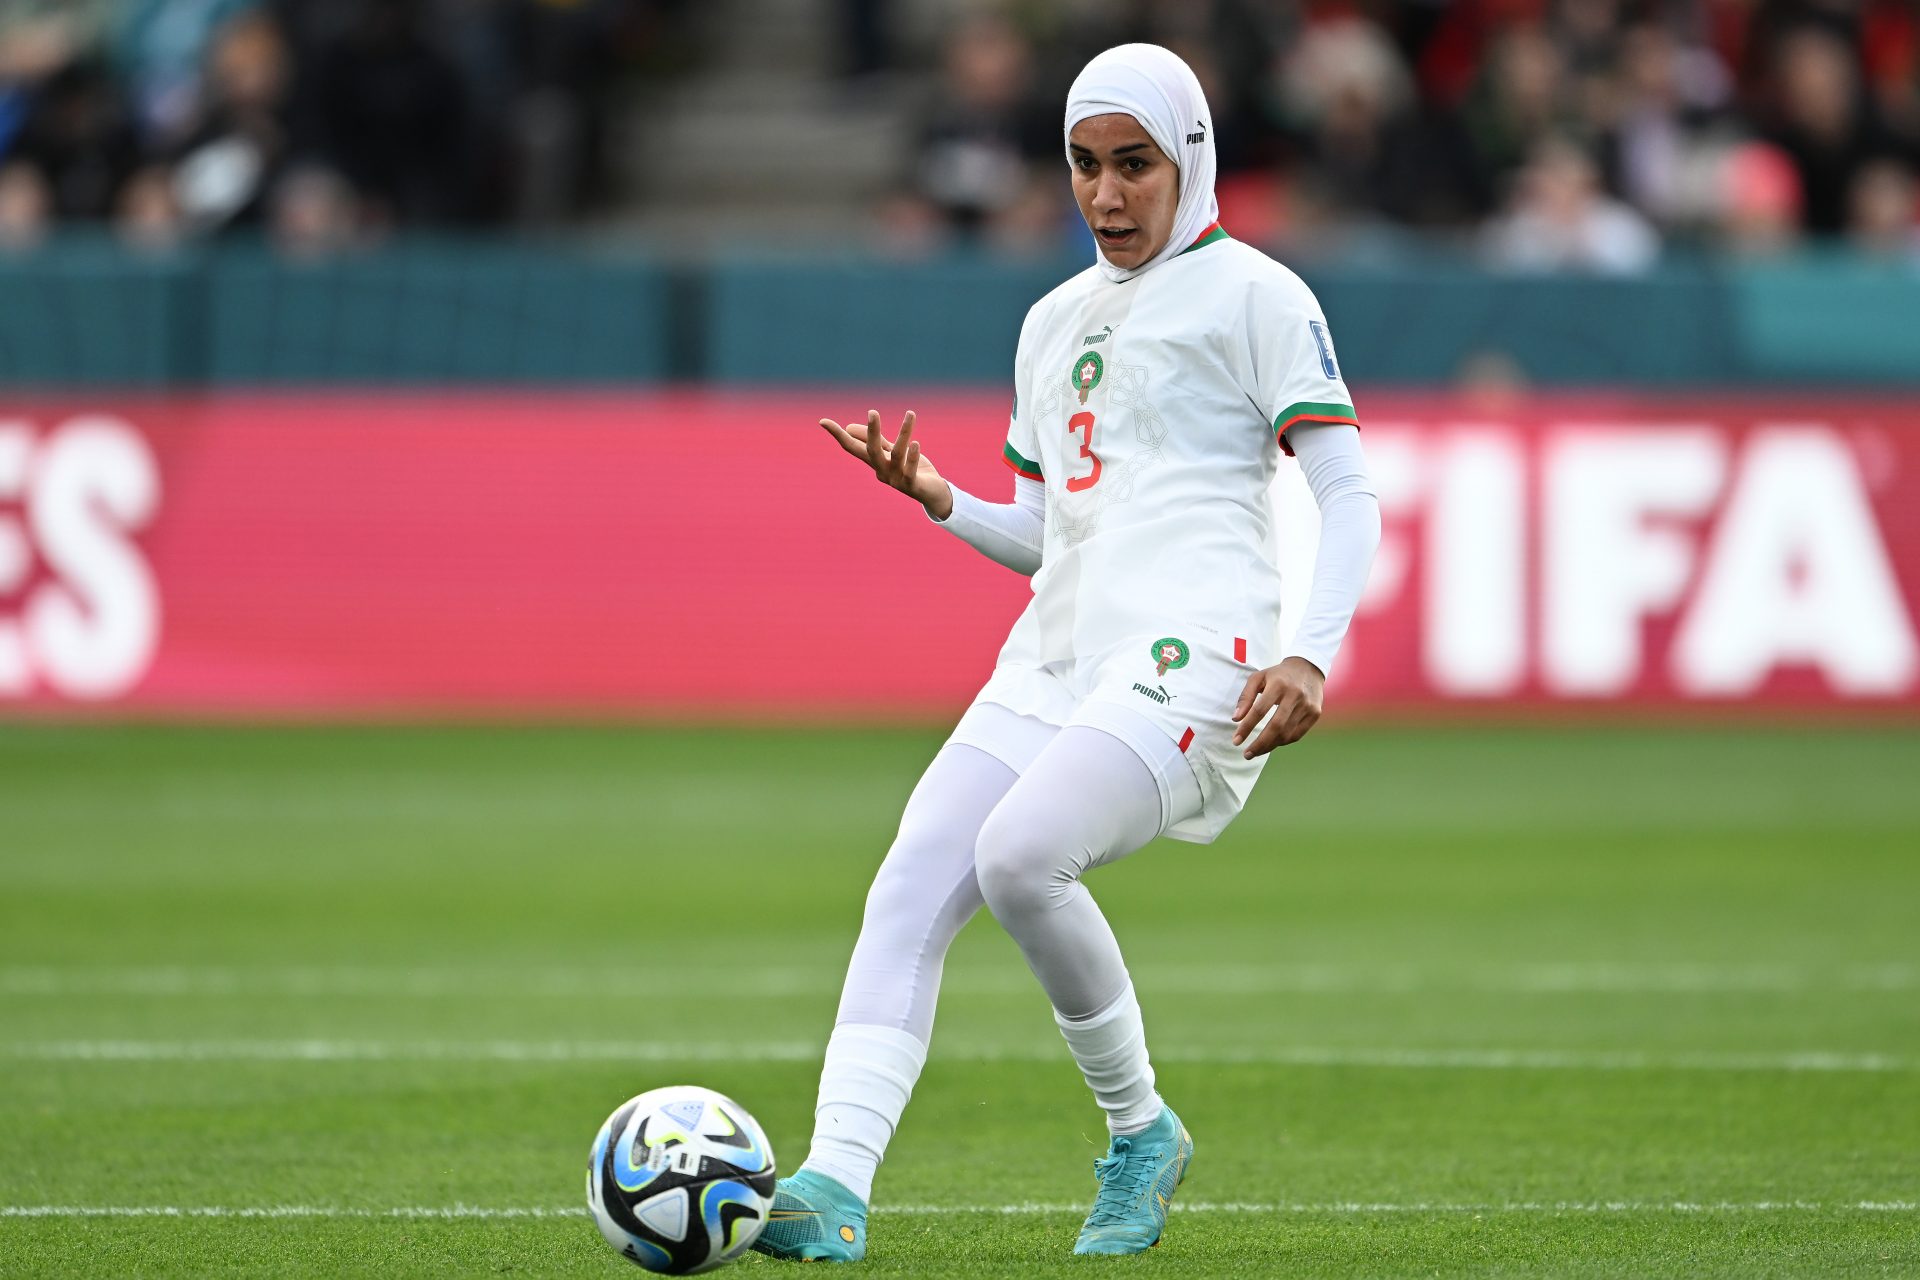 WK Vrouwen: Hoe Nouhaila Benzina moslimvrouwen de weg wijst in het voetbal